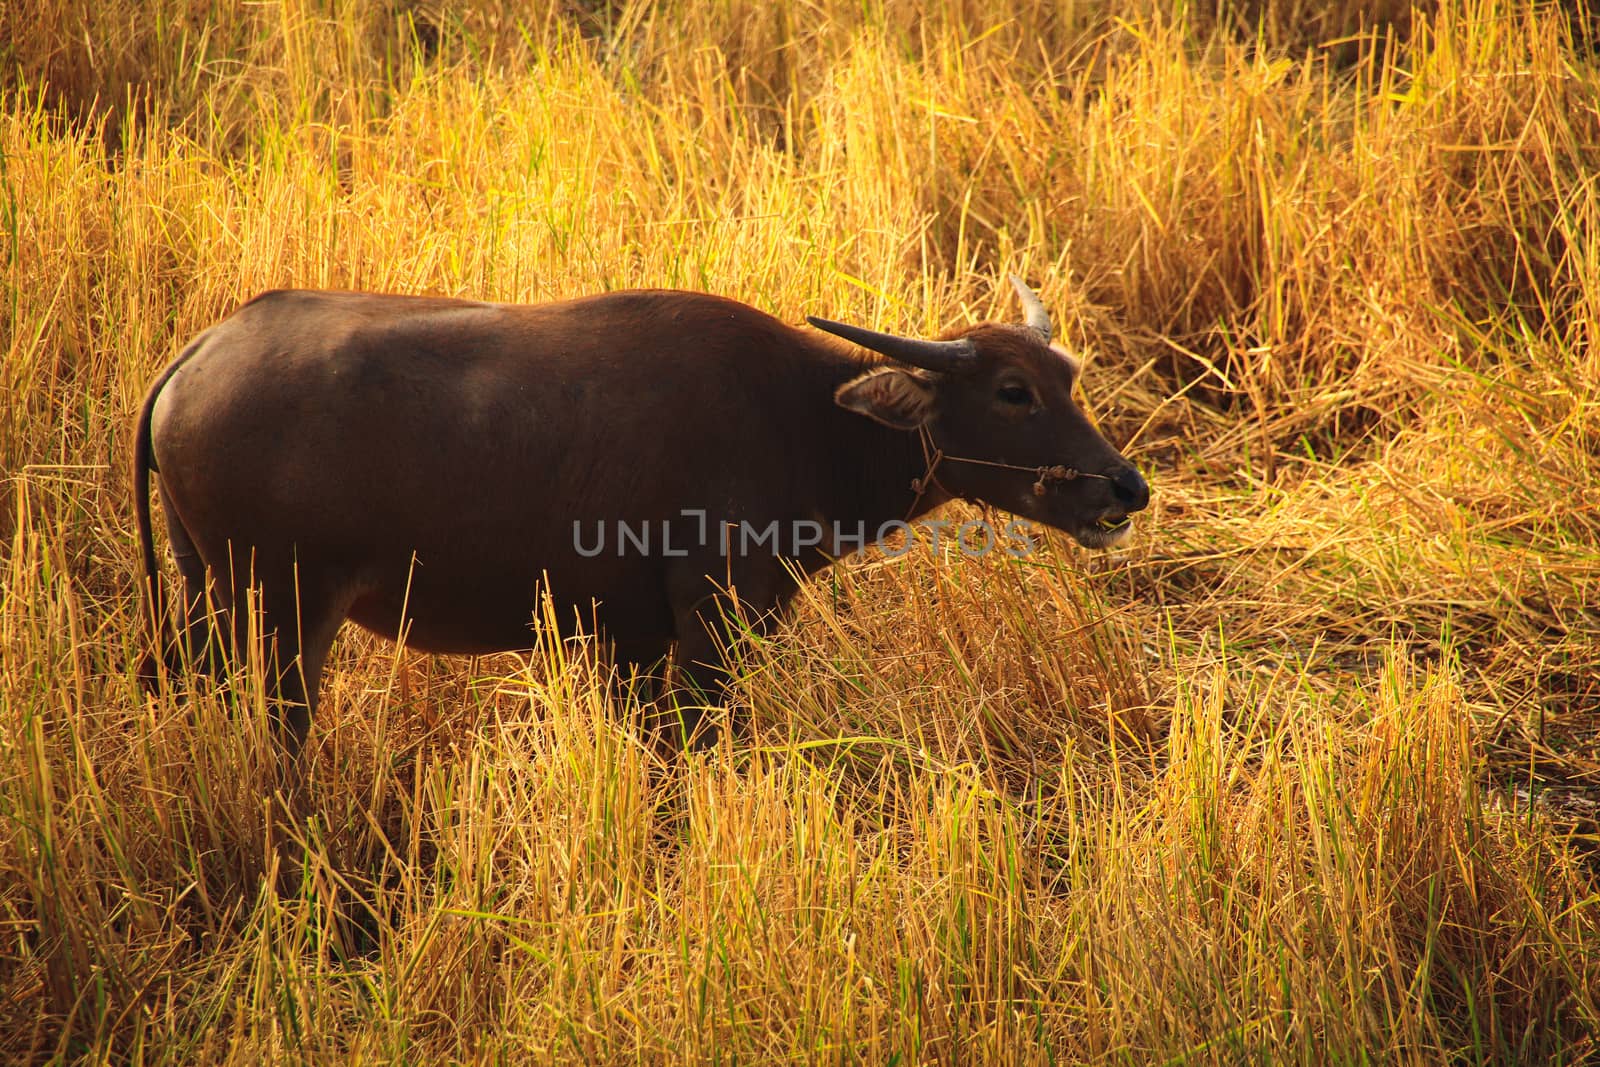 Grazing water buffalo by Sonnet15